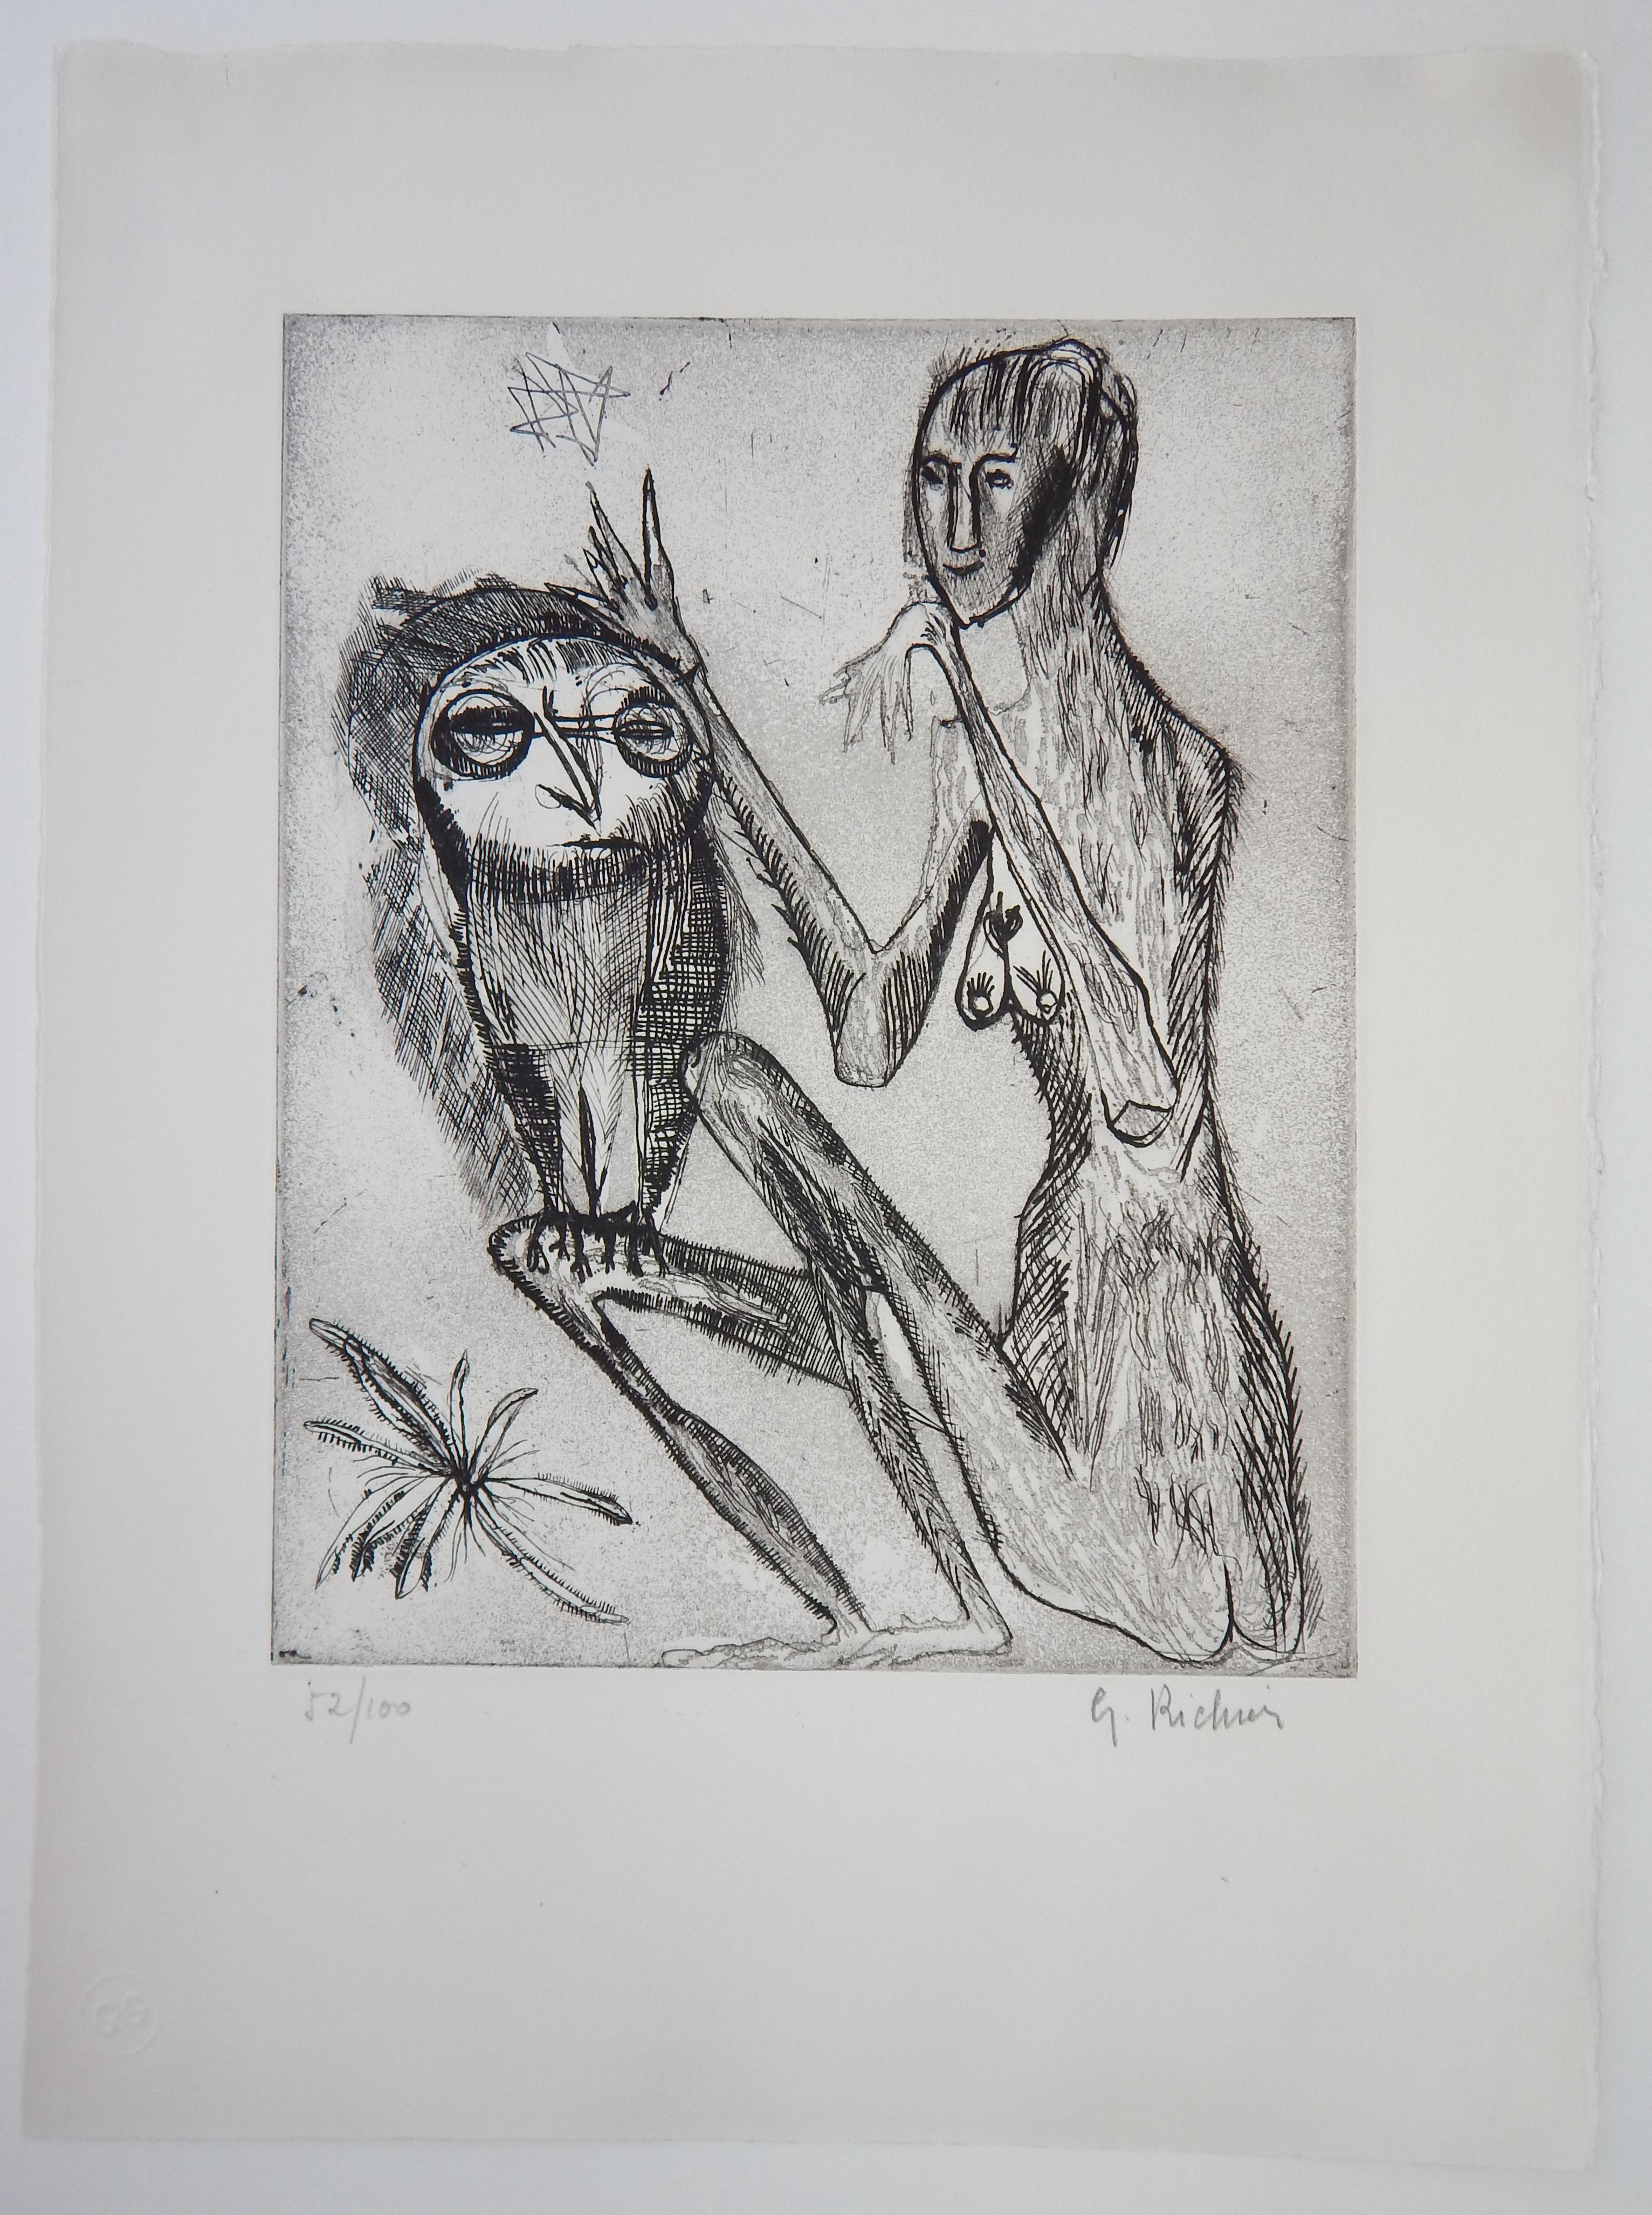 Germaine Richier (1902-1959) gravure à l'eau-forte
Richier était un artiste français connu pour ses figures d'animaux et d'insectes
avec des attributs humains.
Gravure, personnage et hibou, vers 1950.
Non encadré, avec un passe-partout de musée